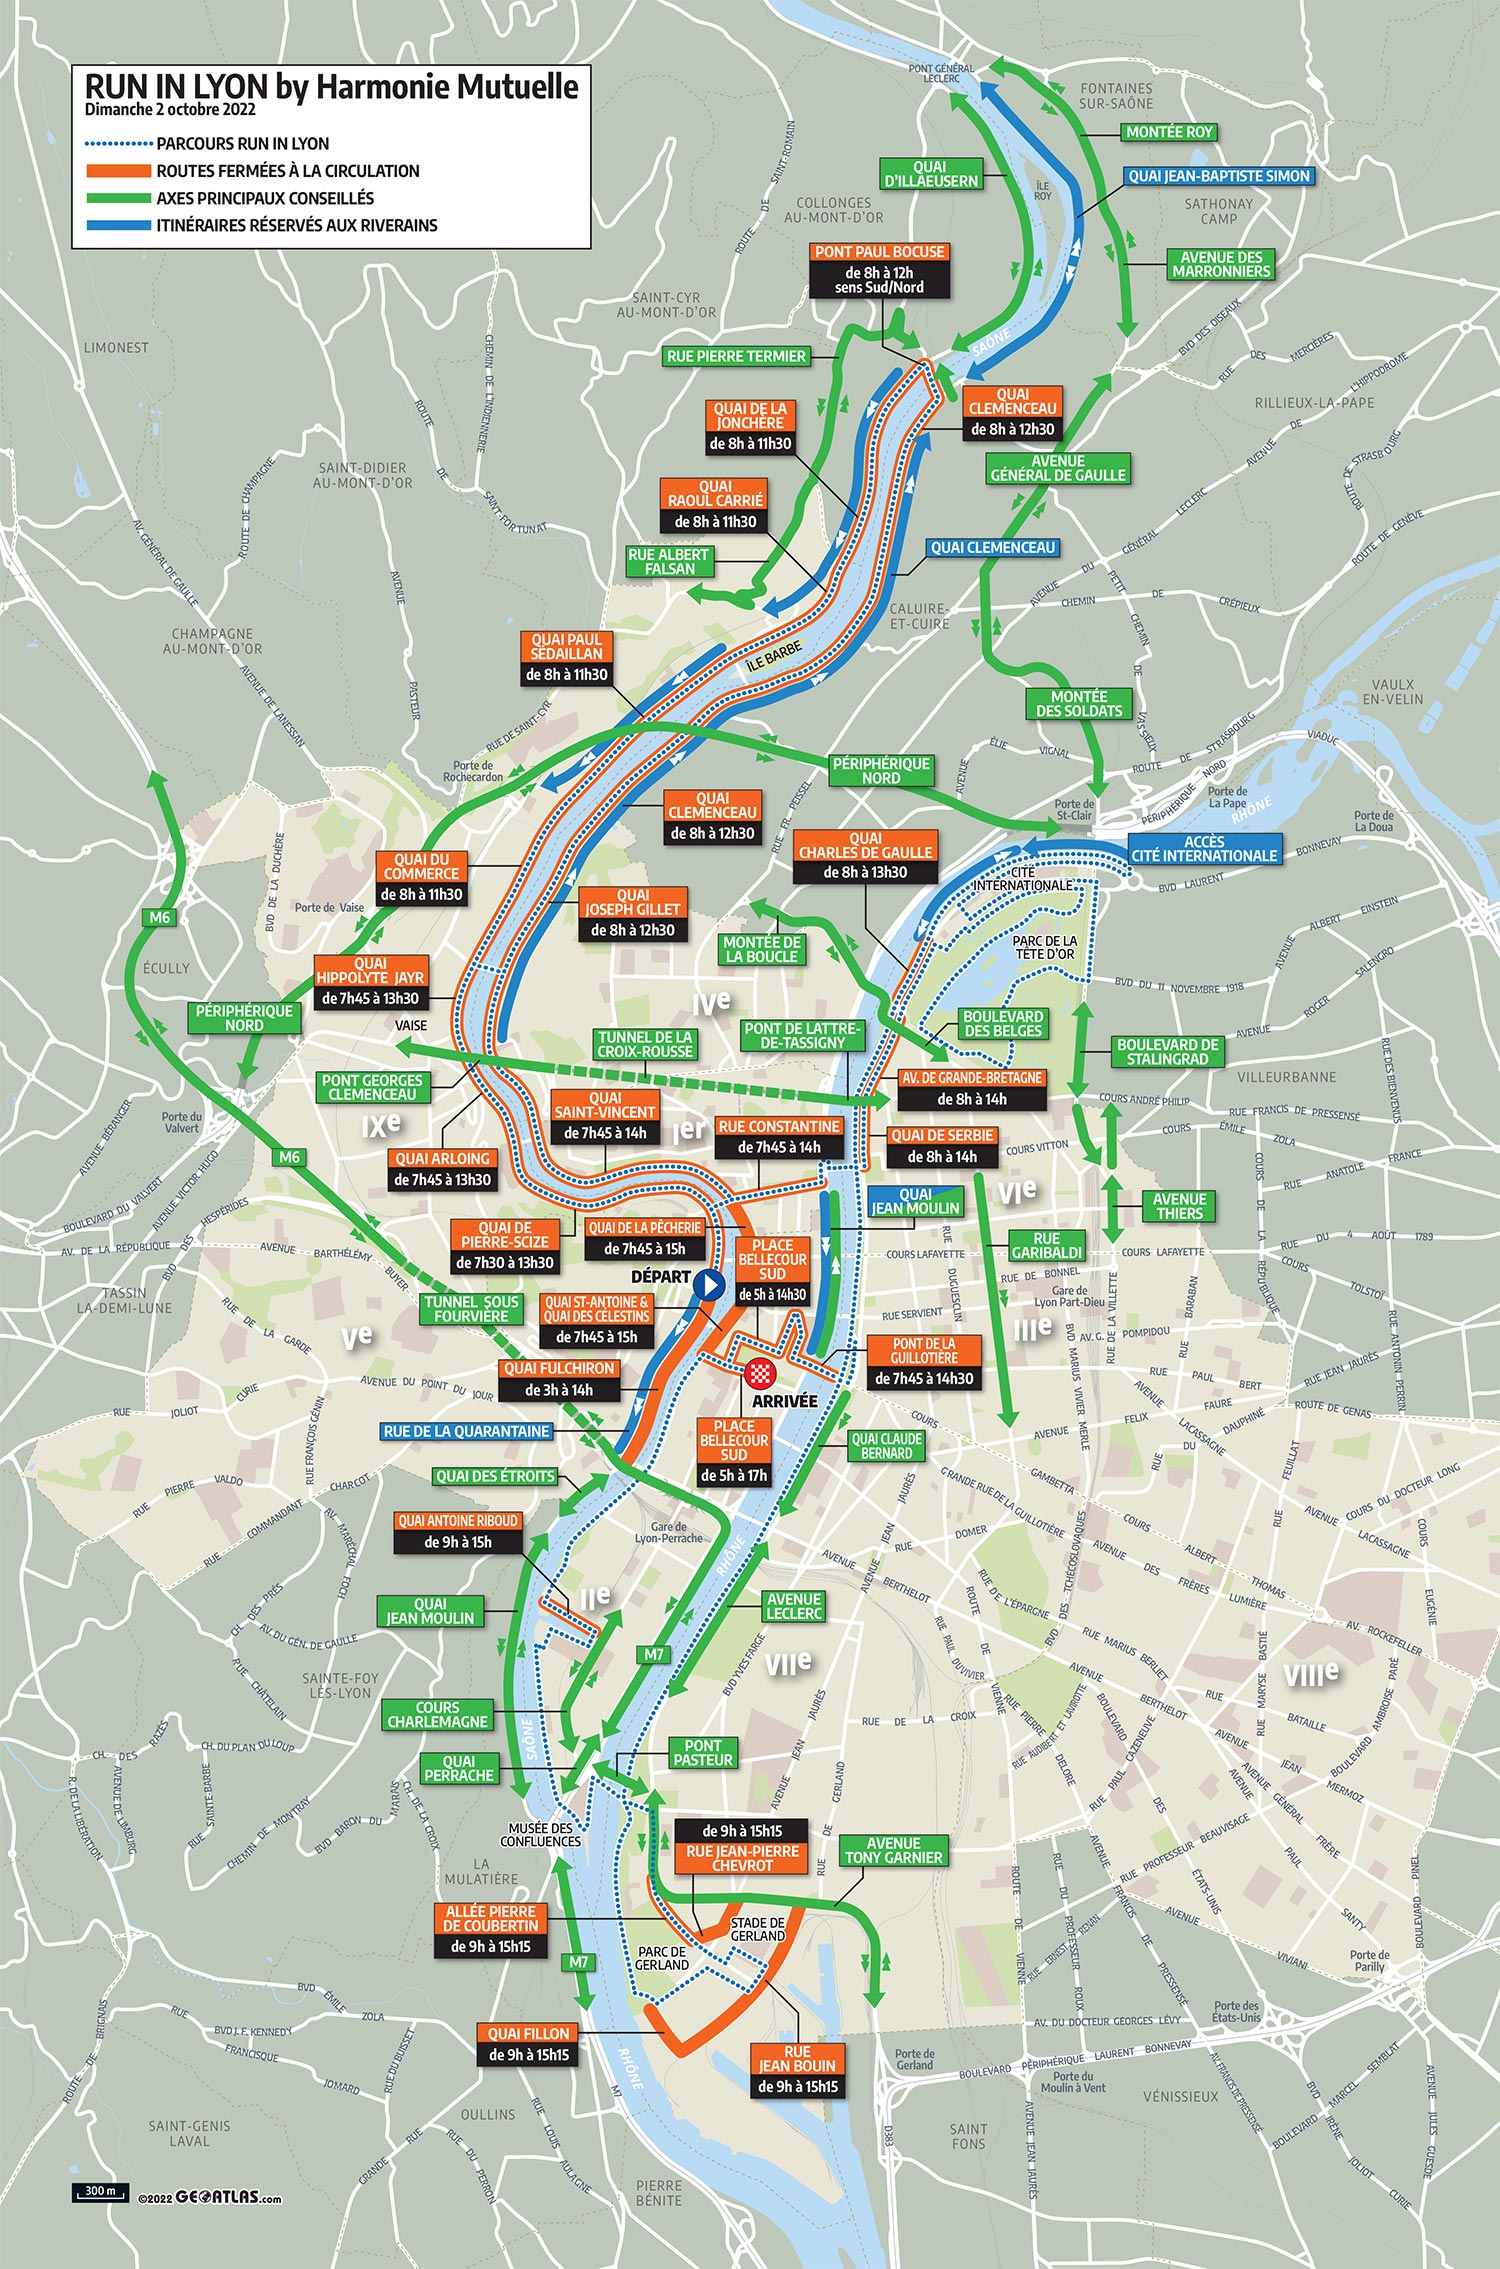 Plan de circulation marathon de Lyon